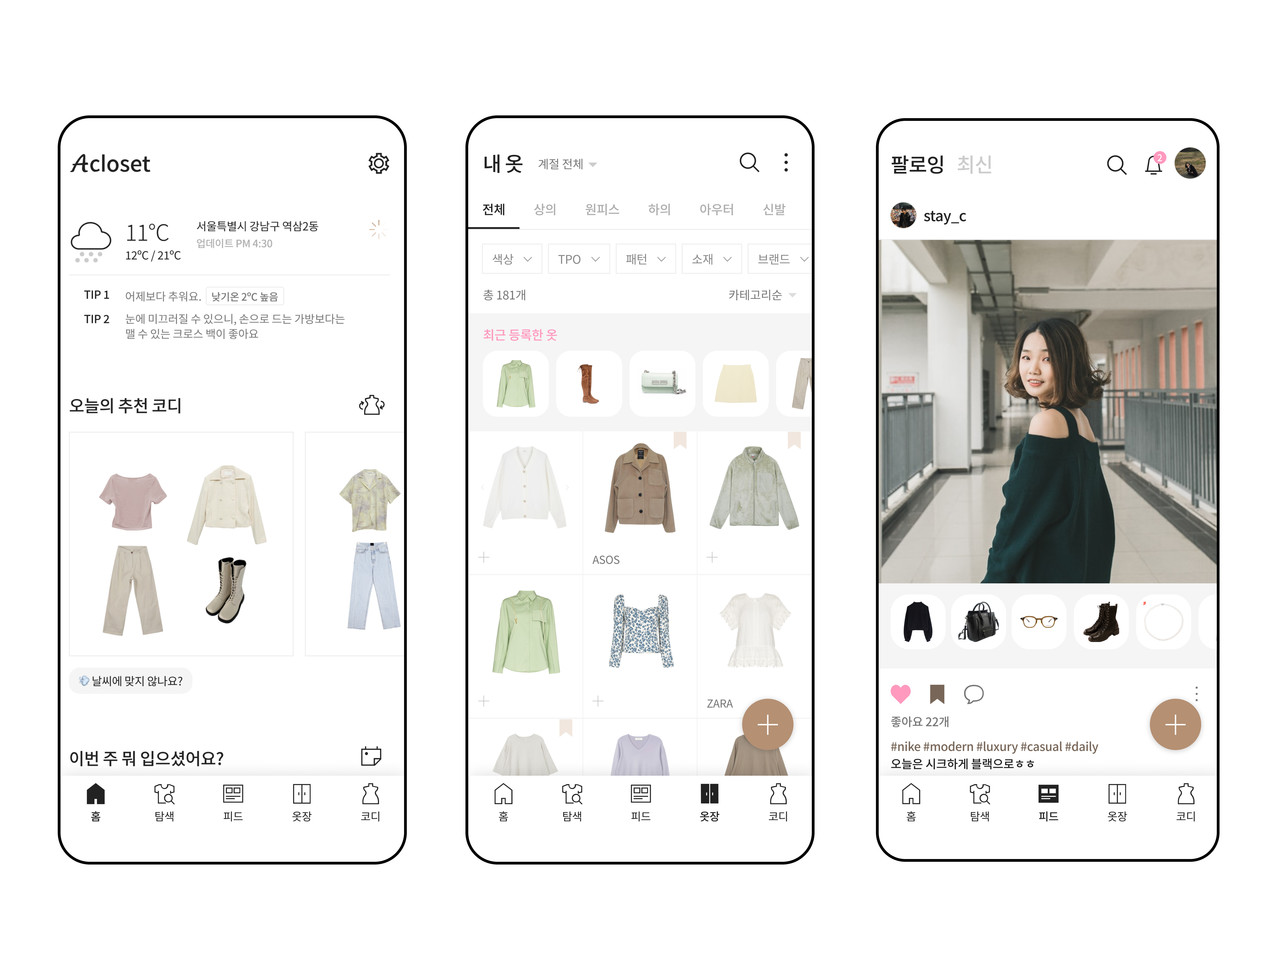 룩코가 개발한 AI 기반 디지털옷장 '에이클로젯'의 모습. (사진=룩코)